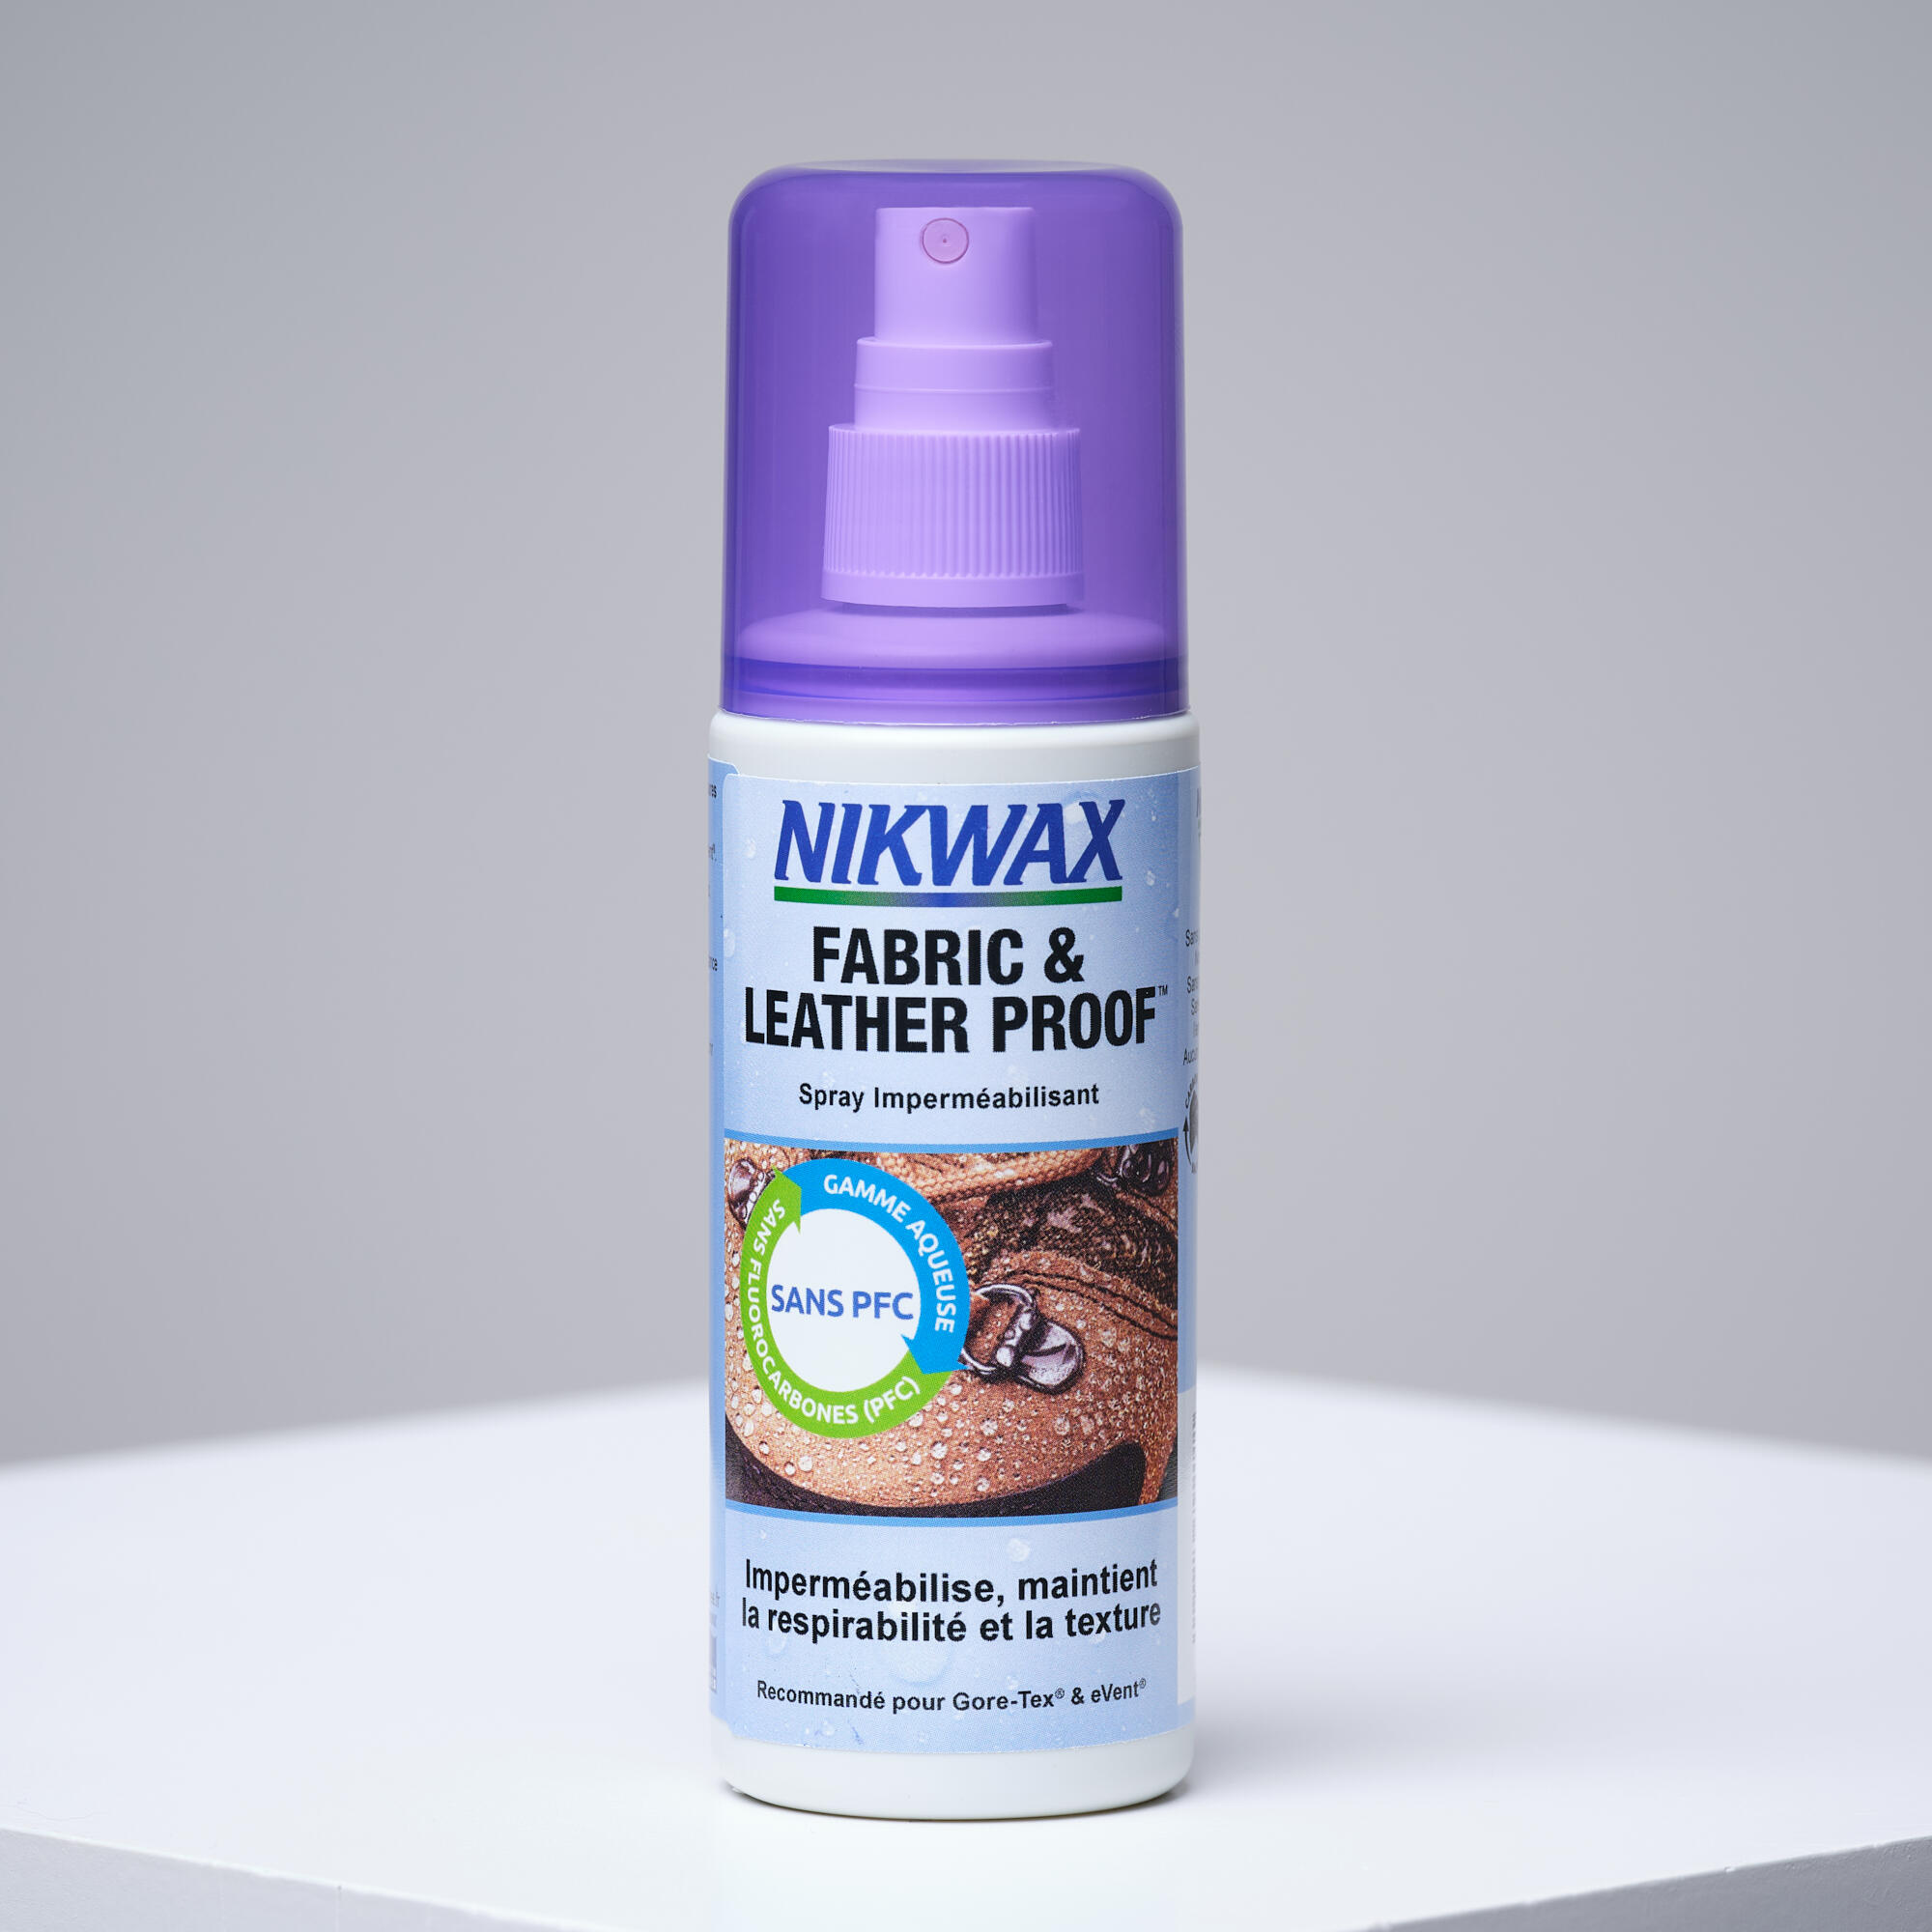 Spray de reimpermeabilizare tratament hidrofob pentru piele și textile Nikwax decathlon